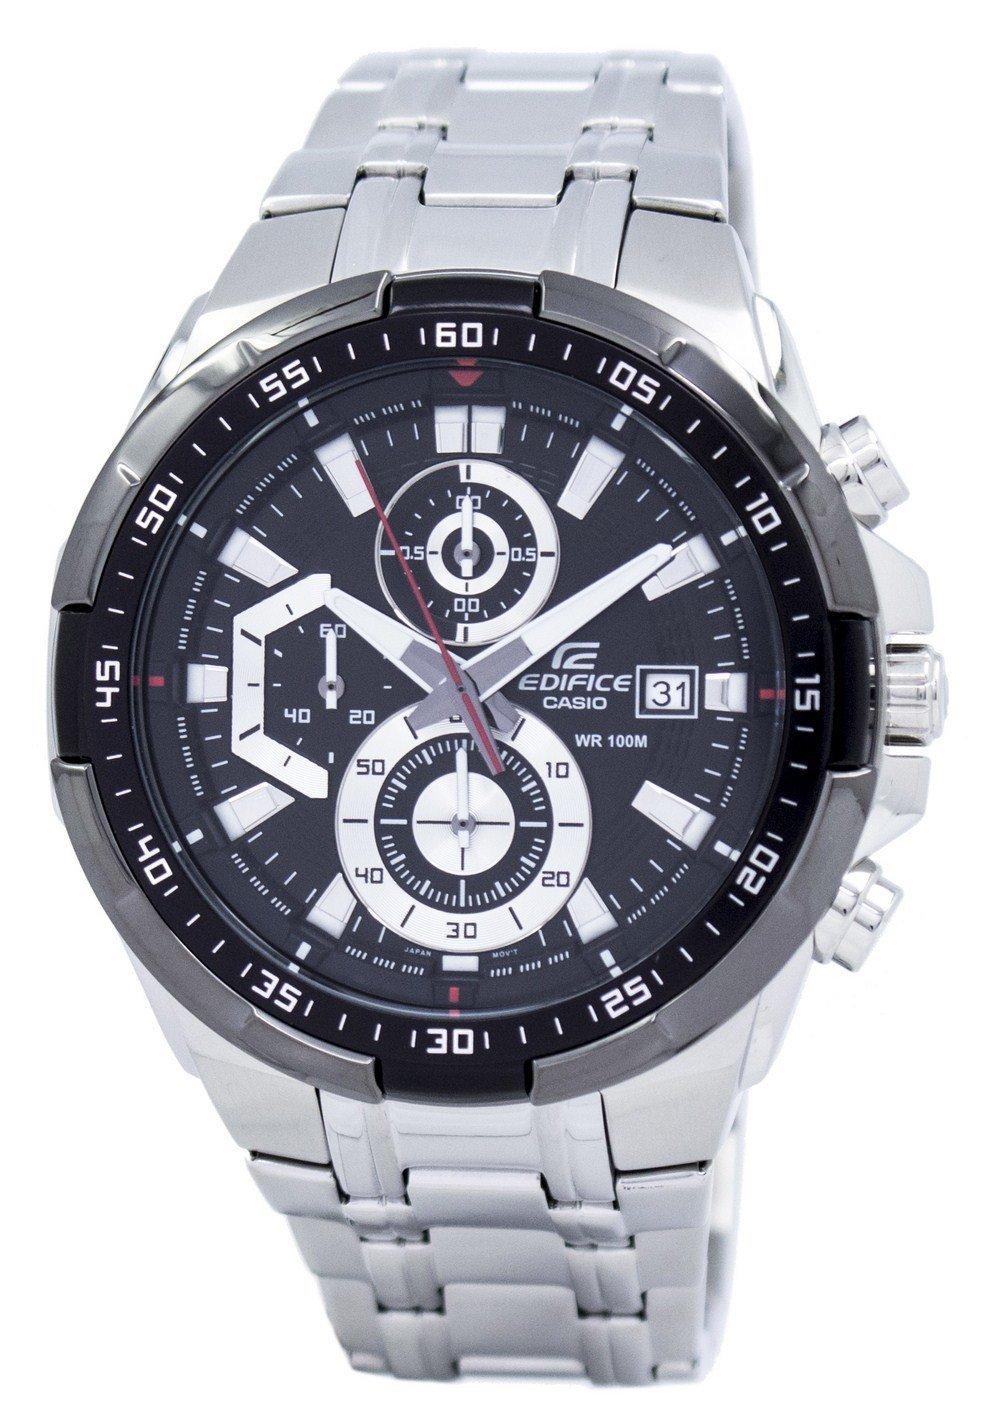 Casio Edifice Chronograph EFR-539D-1AV EFR539D-1AV Men's Watch